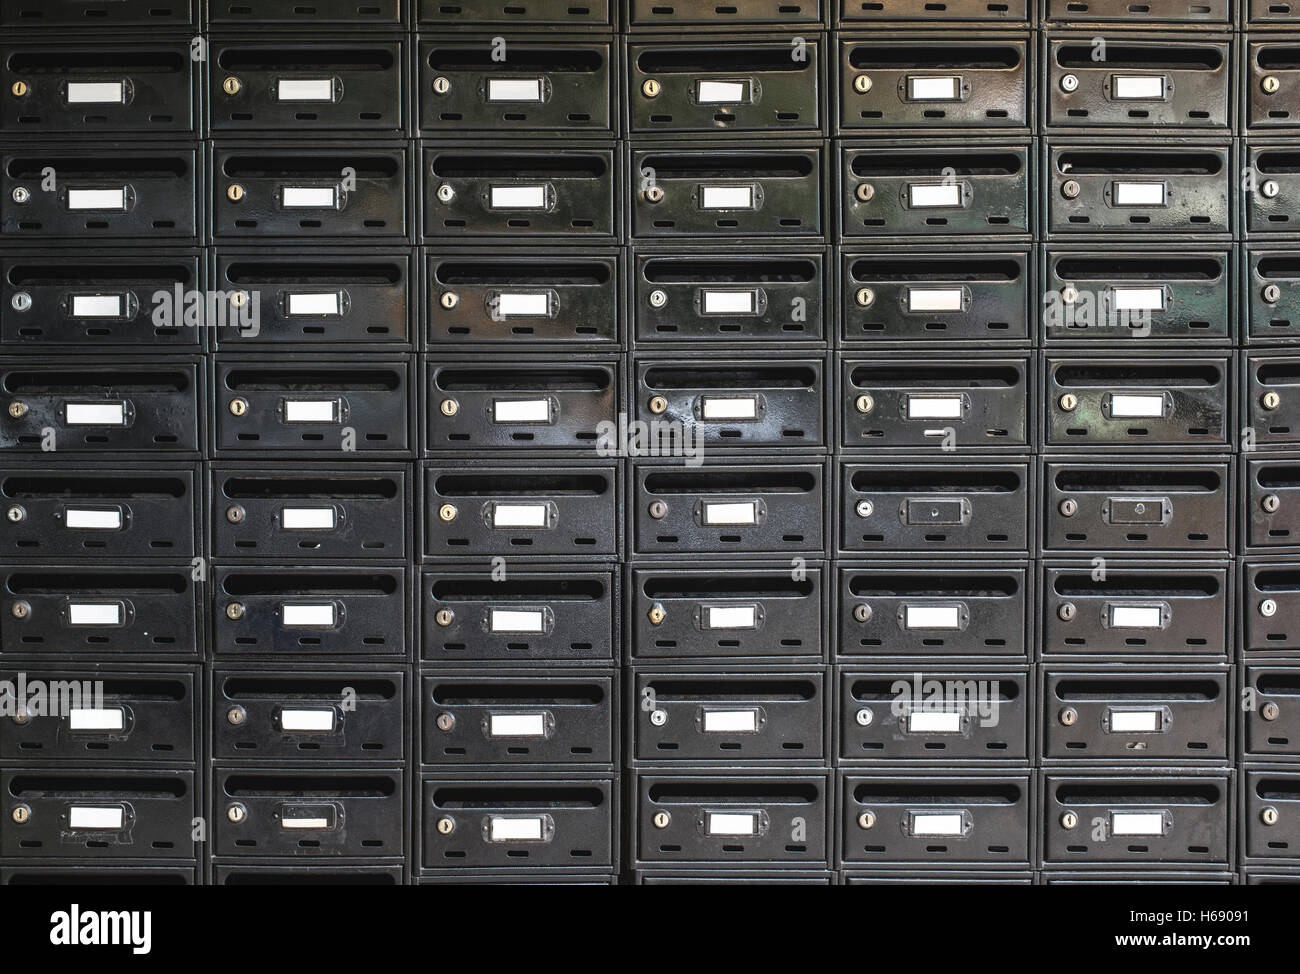 Beaucoup de boîtes aux lettres de couleur noire sur le mur Banque D'Images